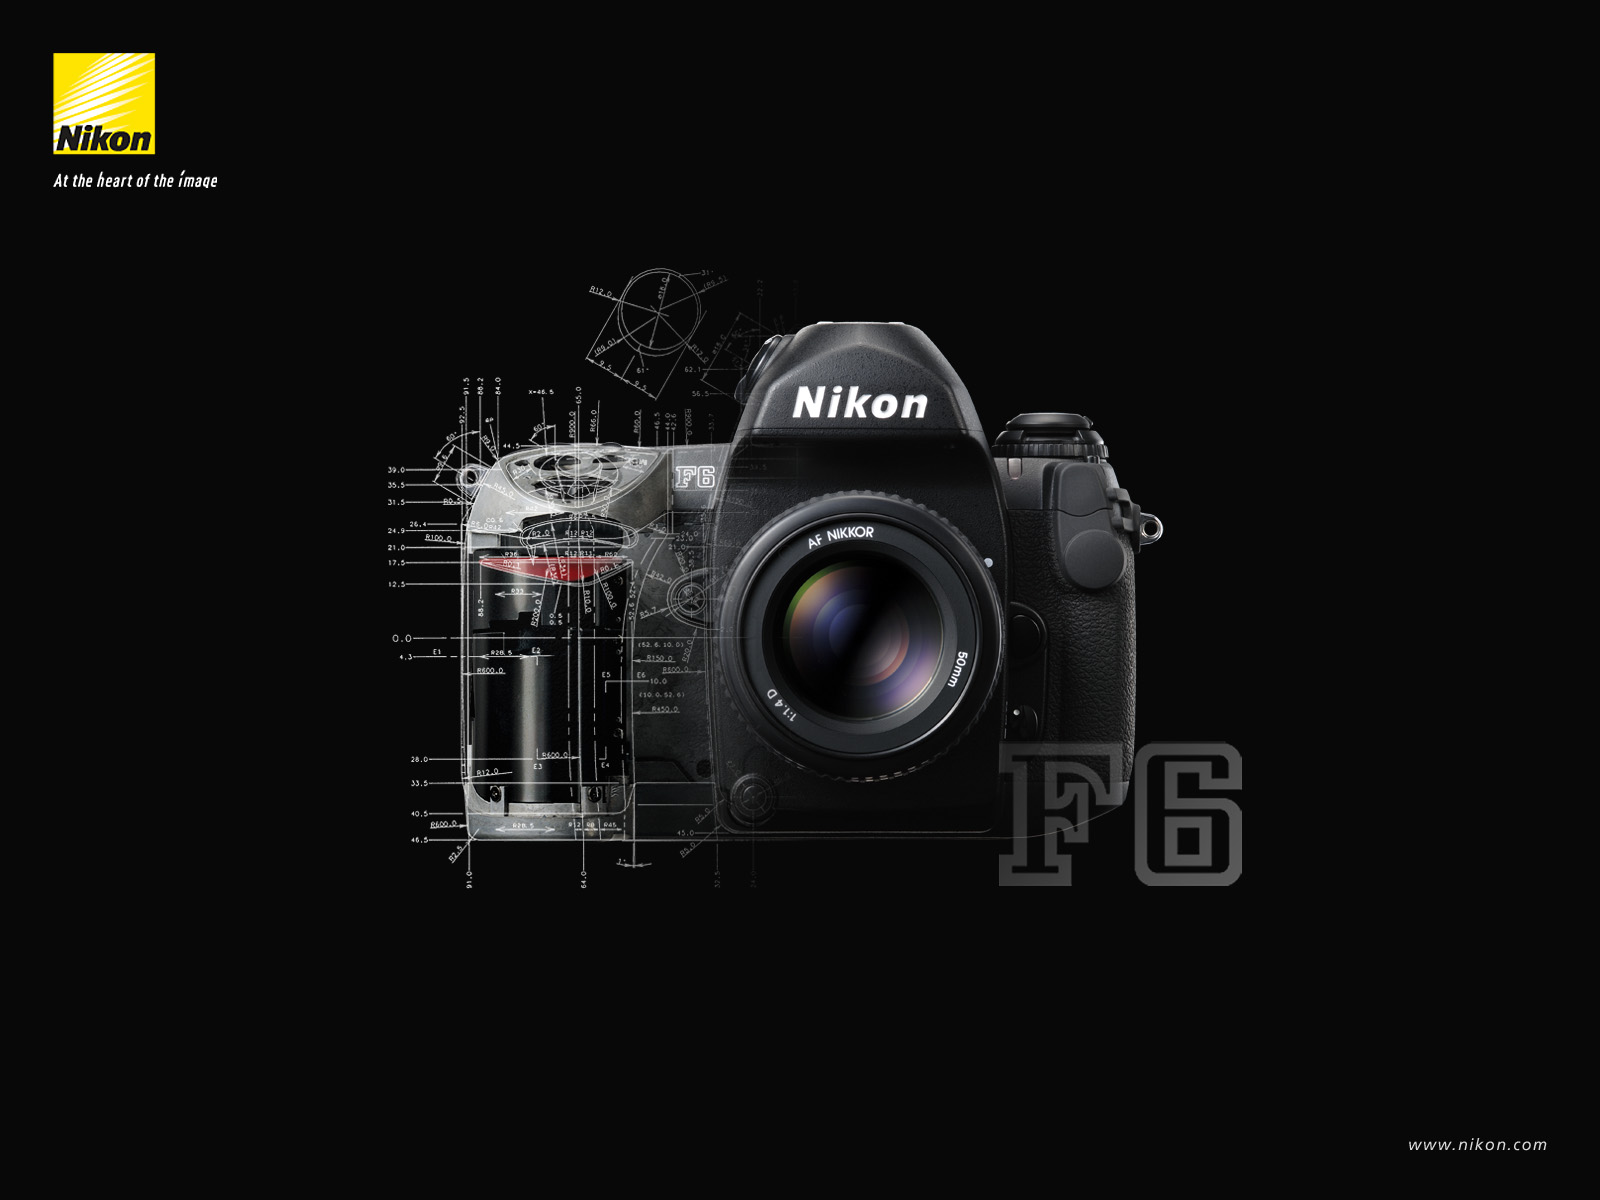 nikon wallpaper hd,fotocamera con obiettivo intercambiabile mirrorless,telecamera,camera digitale,fotocamera reflex,fotocamera reflex a obiettivo singolo